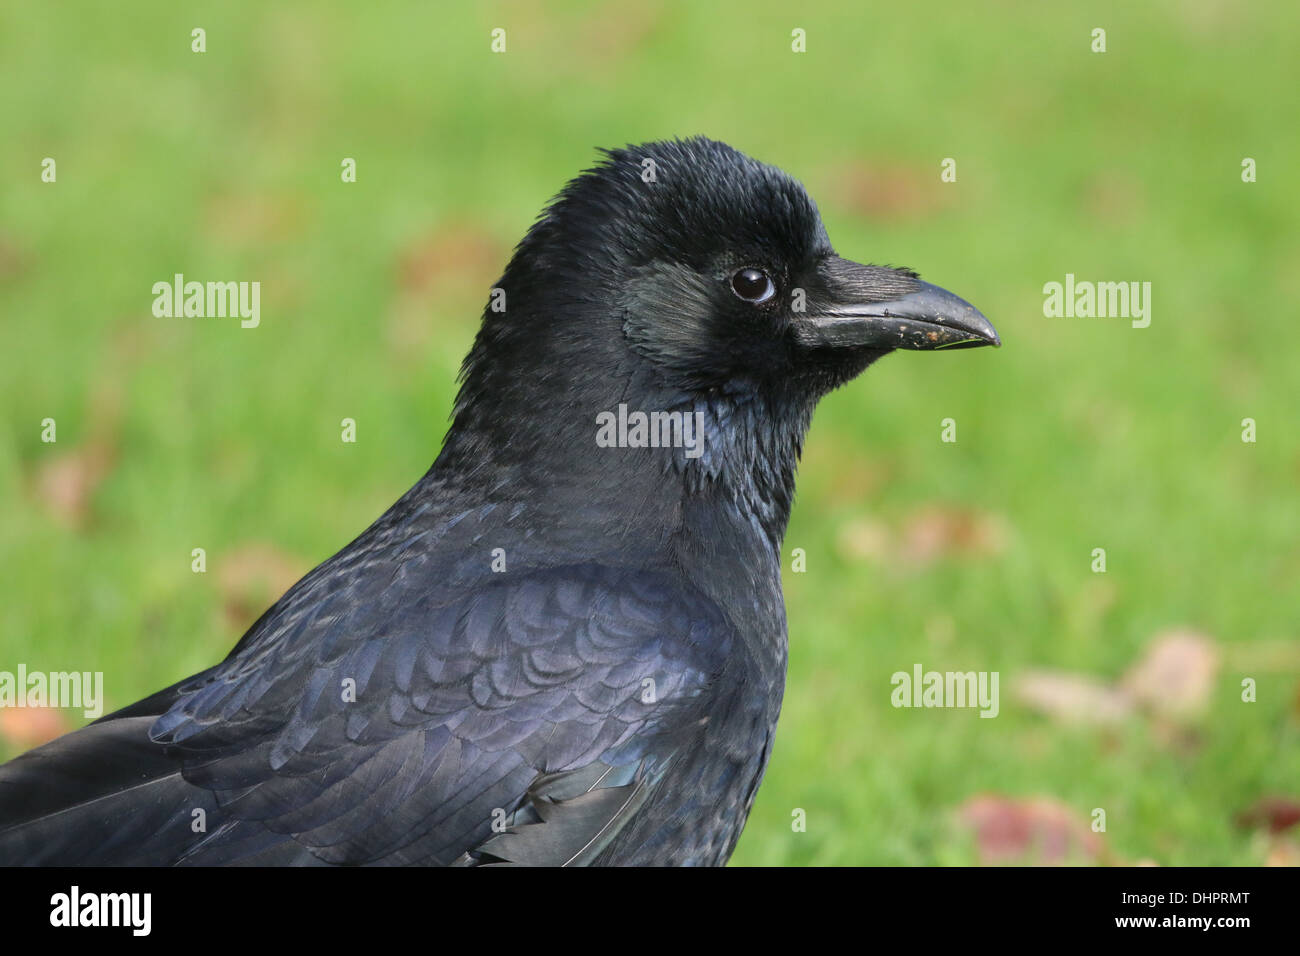 Dettagliato di close-up di testa e la parte superiore del corpo di un nero carrion crow (Corvus Corone), visto di profilo Foto Stock